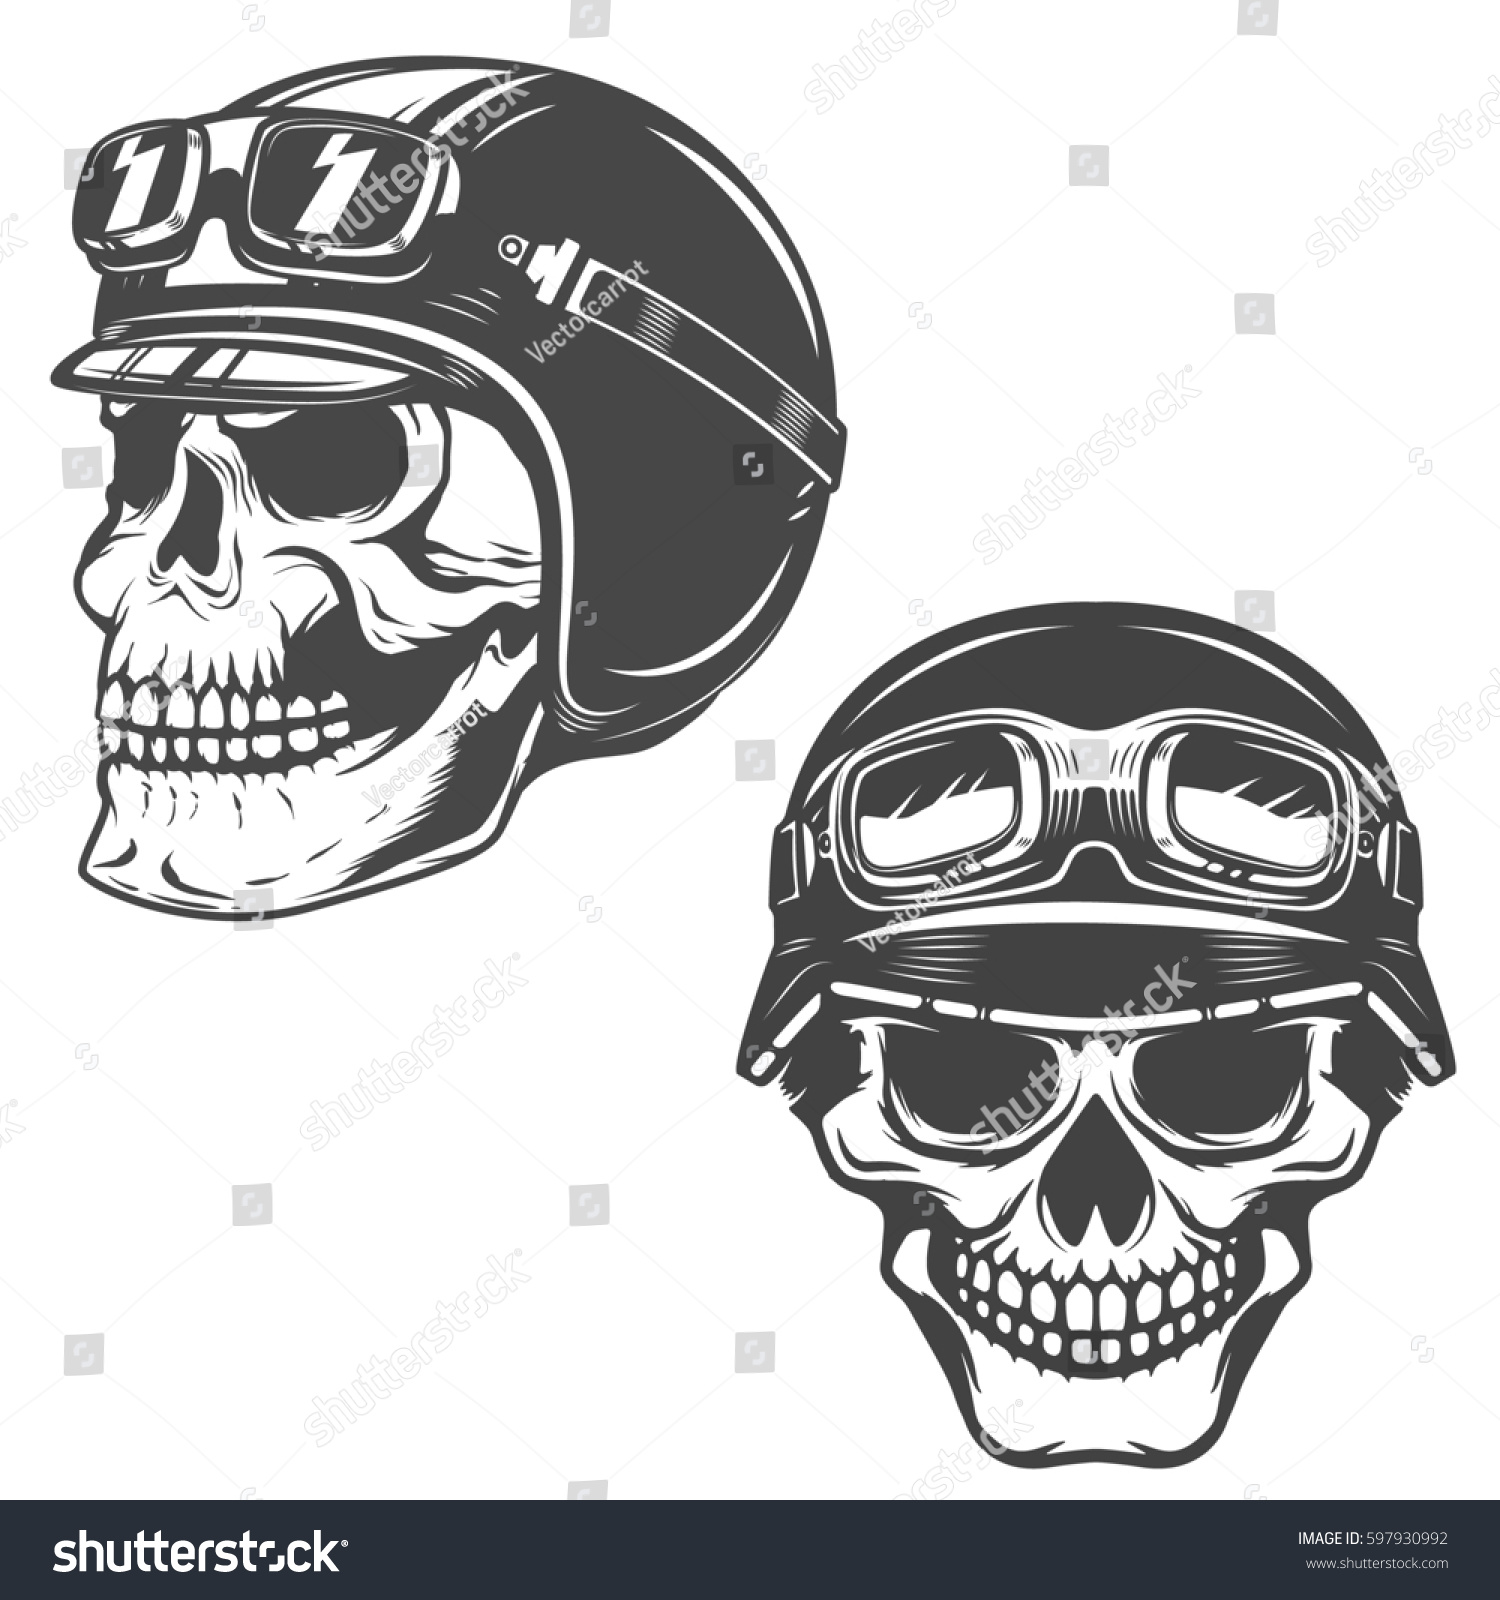 Set Racer Skulls Isolated On White Stock Illustration 597930992